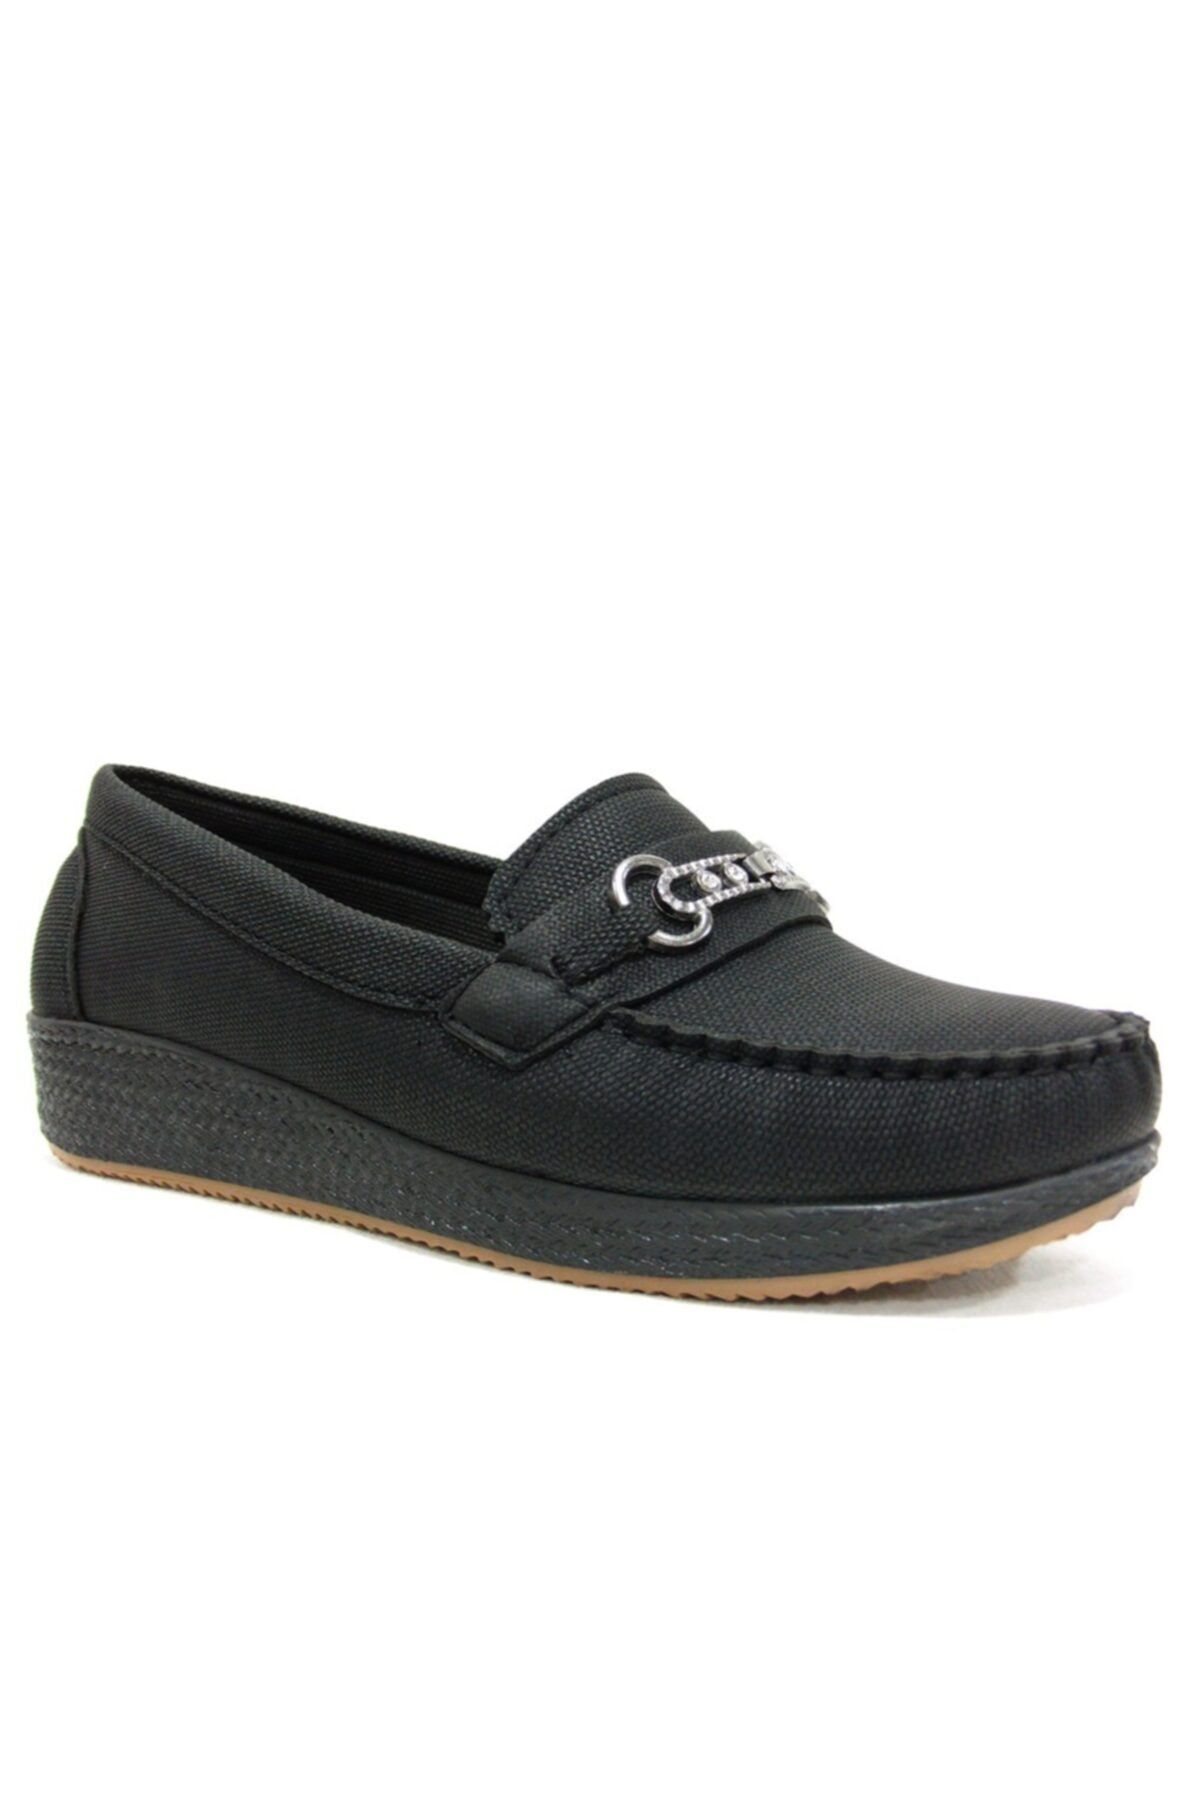 Annamaria Siyah Dolgu Topuk Comfort Ayakkabı